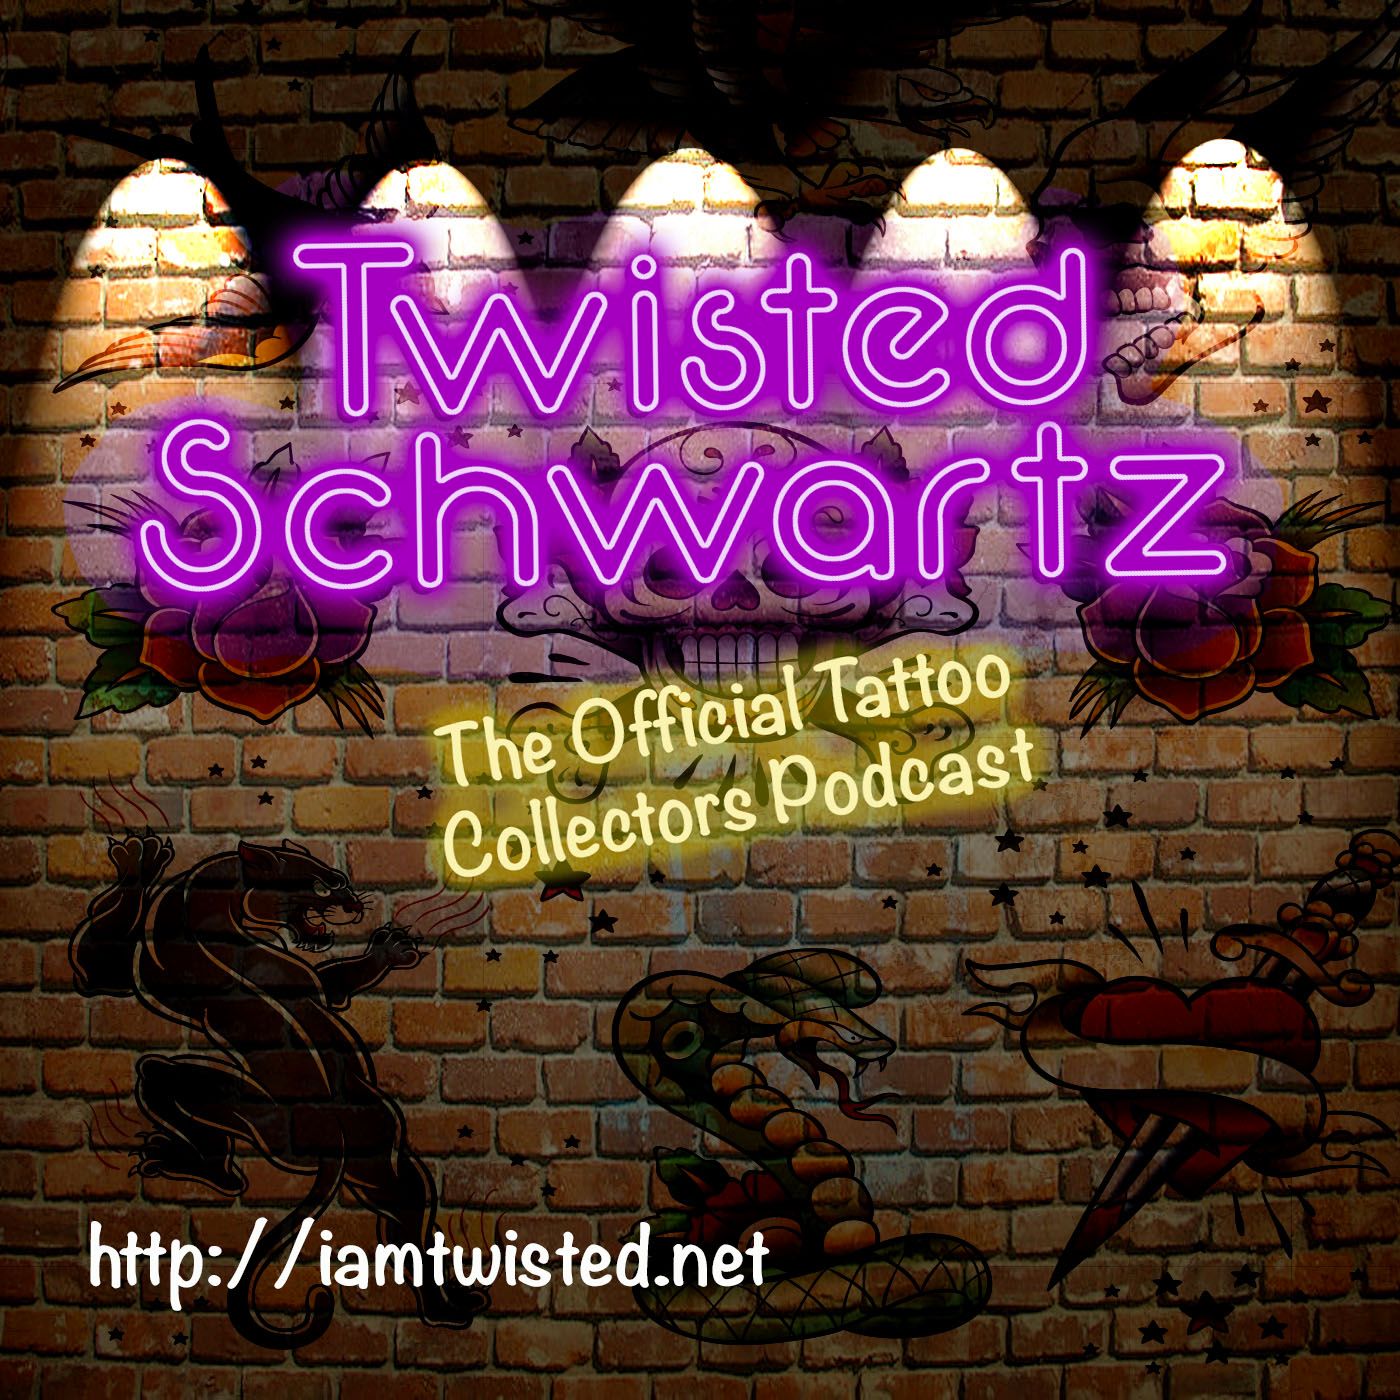 My Twisted Schwartz’s tracks